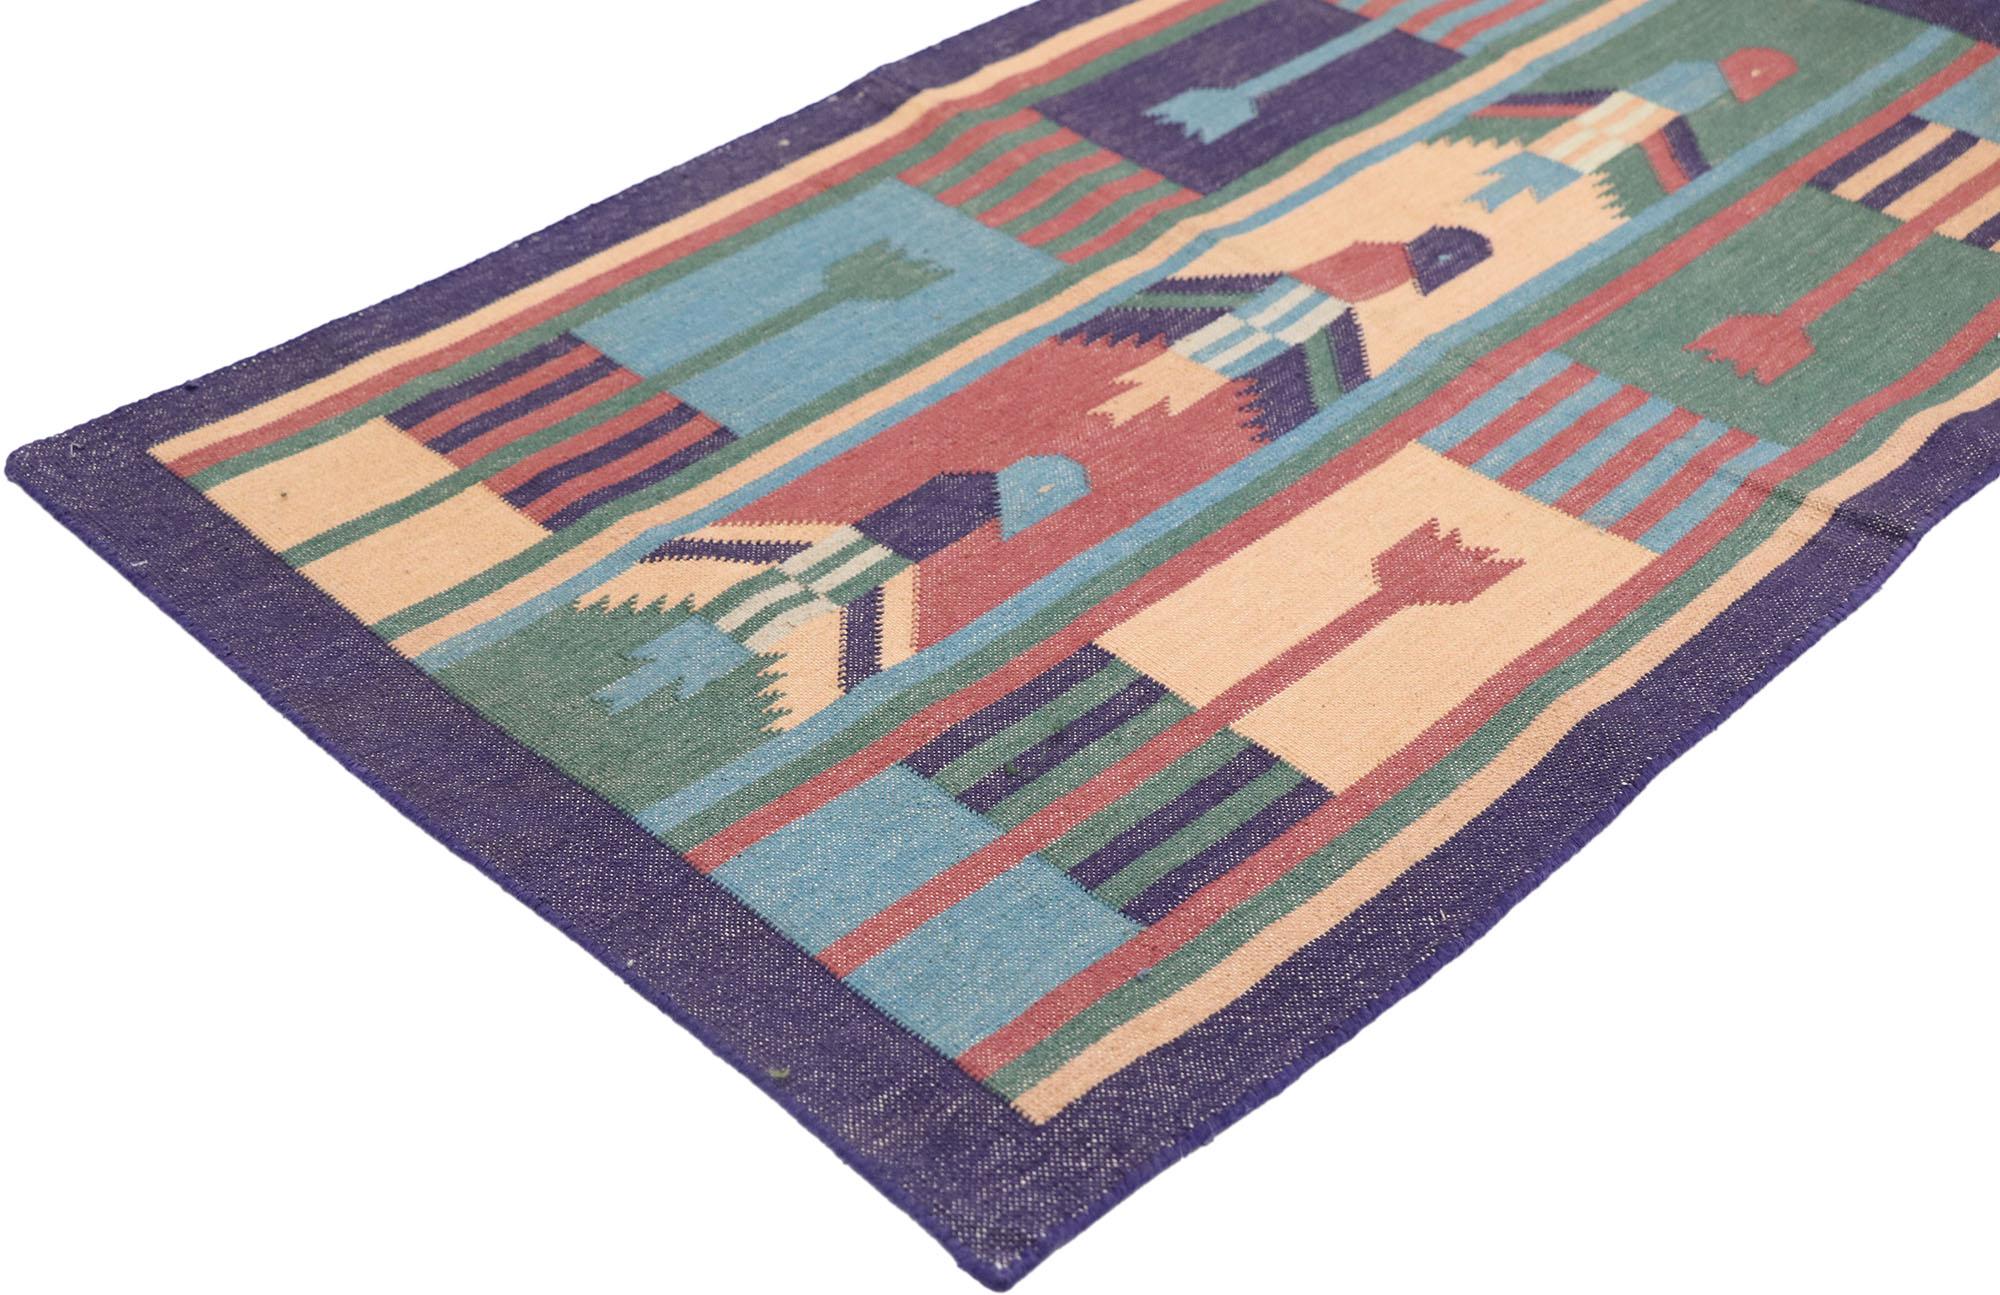 77913 Vintage Indischer Dhurrie Teppich mit postmodernem kubistischem Stil 01'10 x 03'01. Dieser handgewebte indische Dhurrie-Teppich aus Baumwolle im Vintage-Stil besticht durch winzige Details und ein kühnes, ausdrucksstarkes Design in Kombination